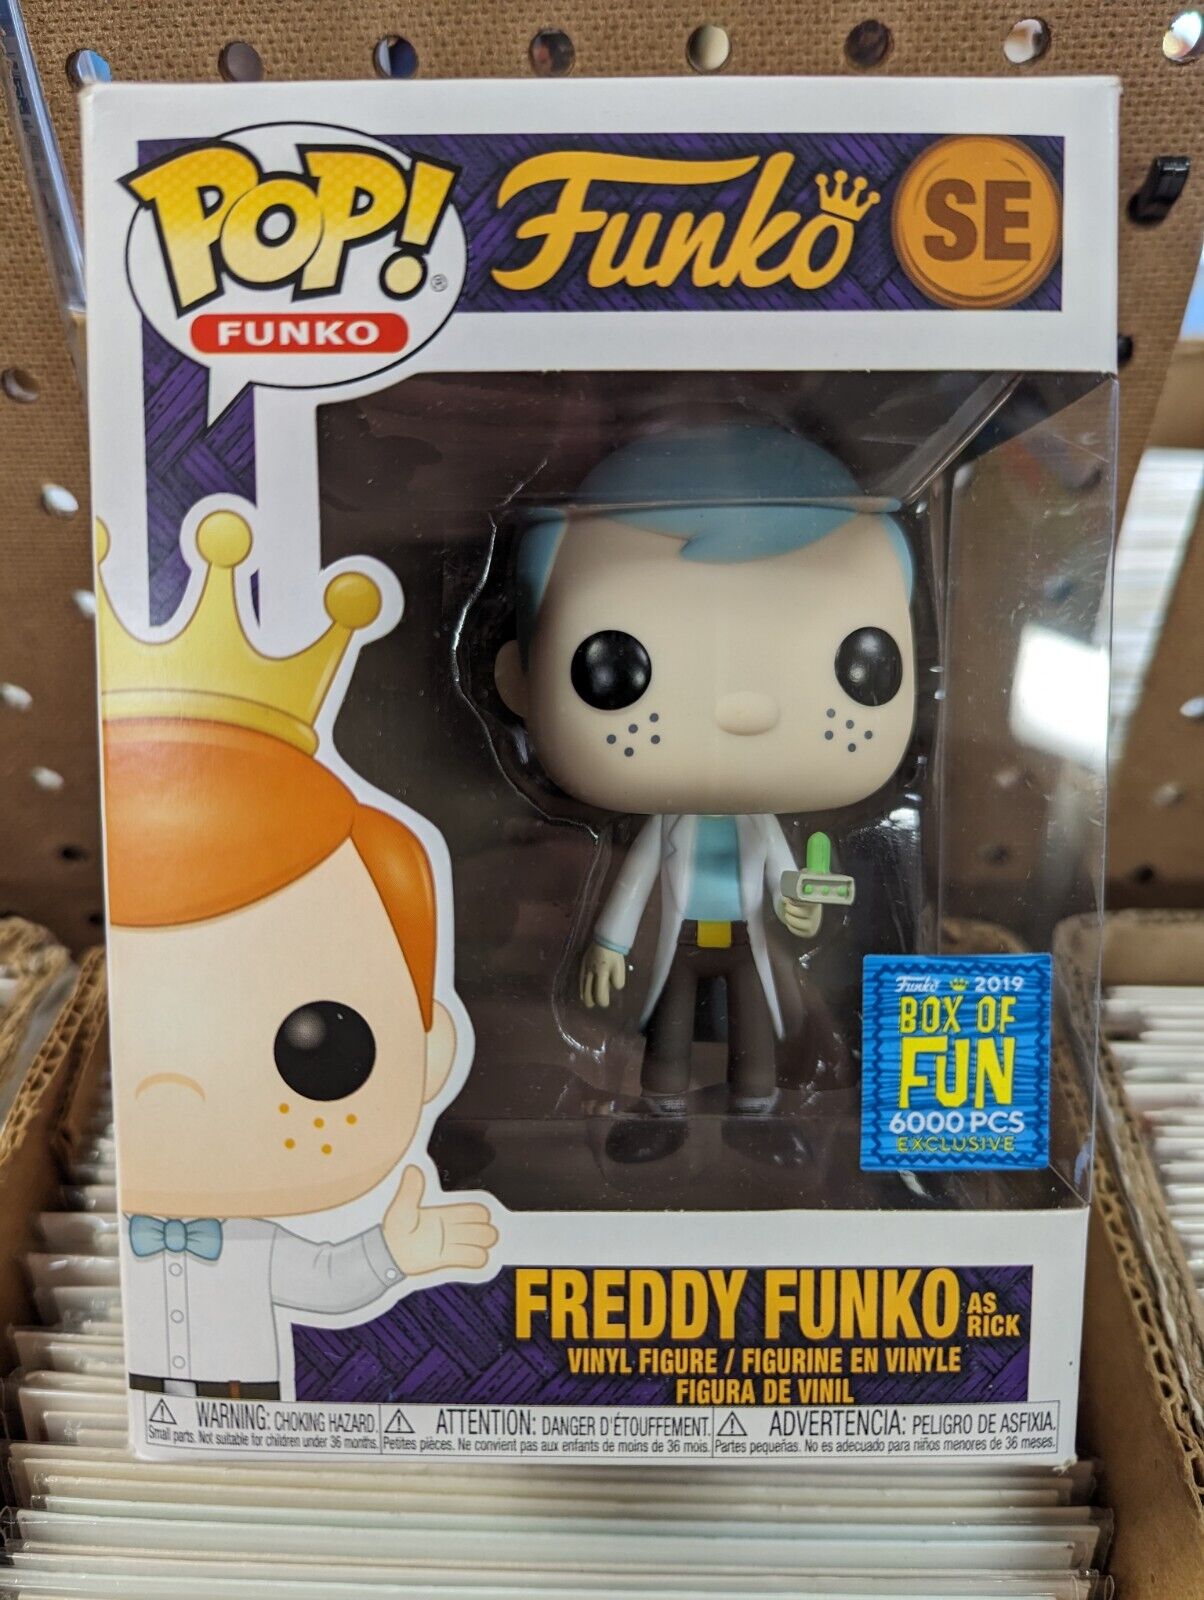 Funko Pop Freddy Funko As Rick SE Box Of Fun 6000 Pcs